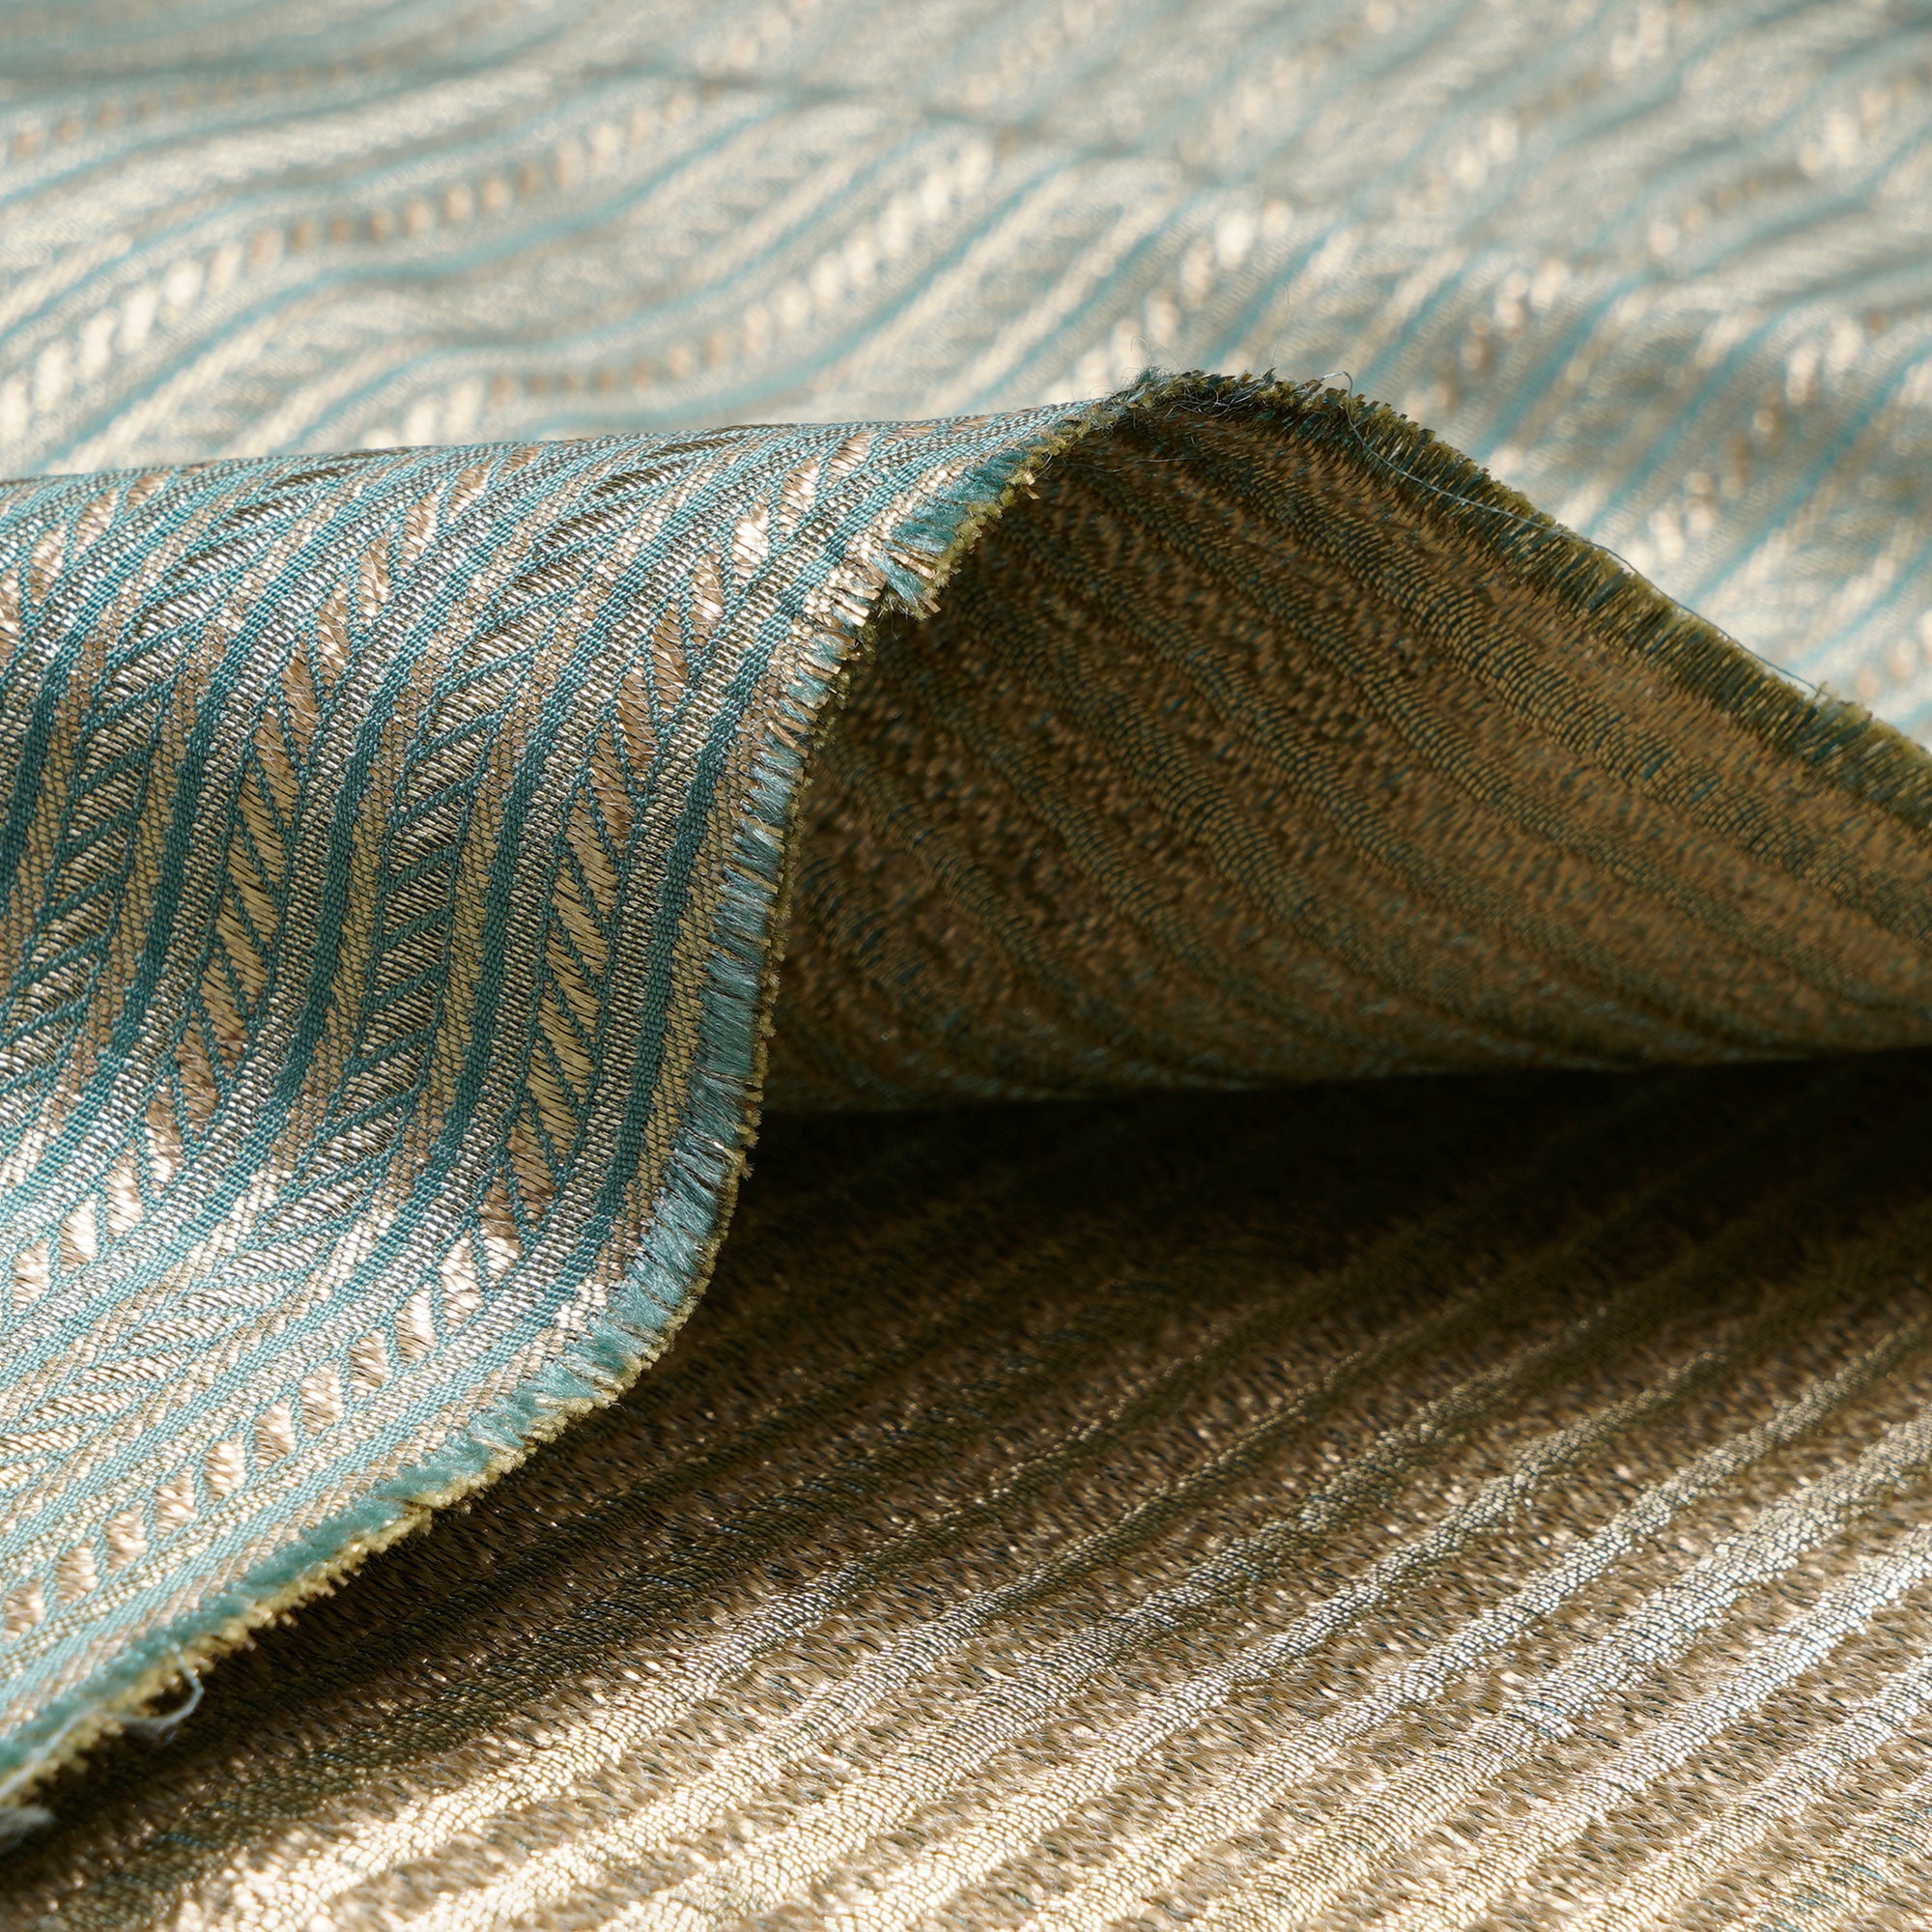 Wasabi Stripe Pattern Blended Banarasi Brocade Fabric